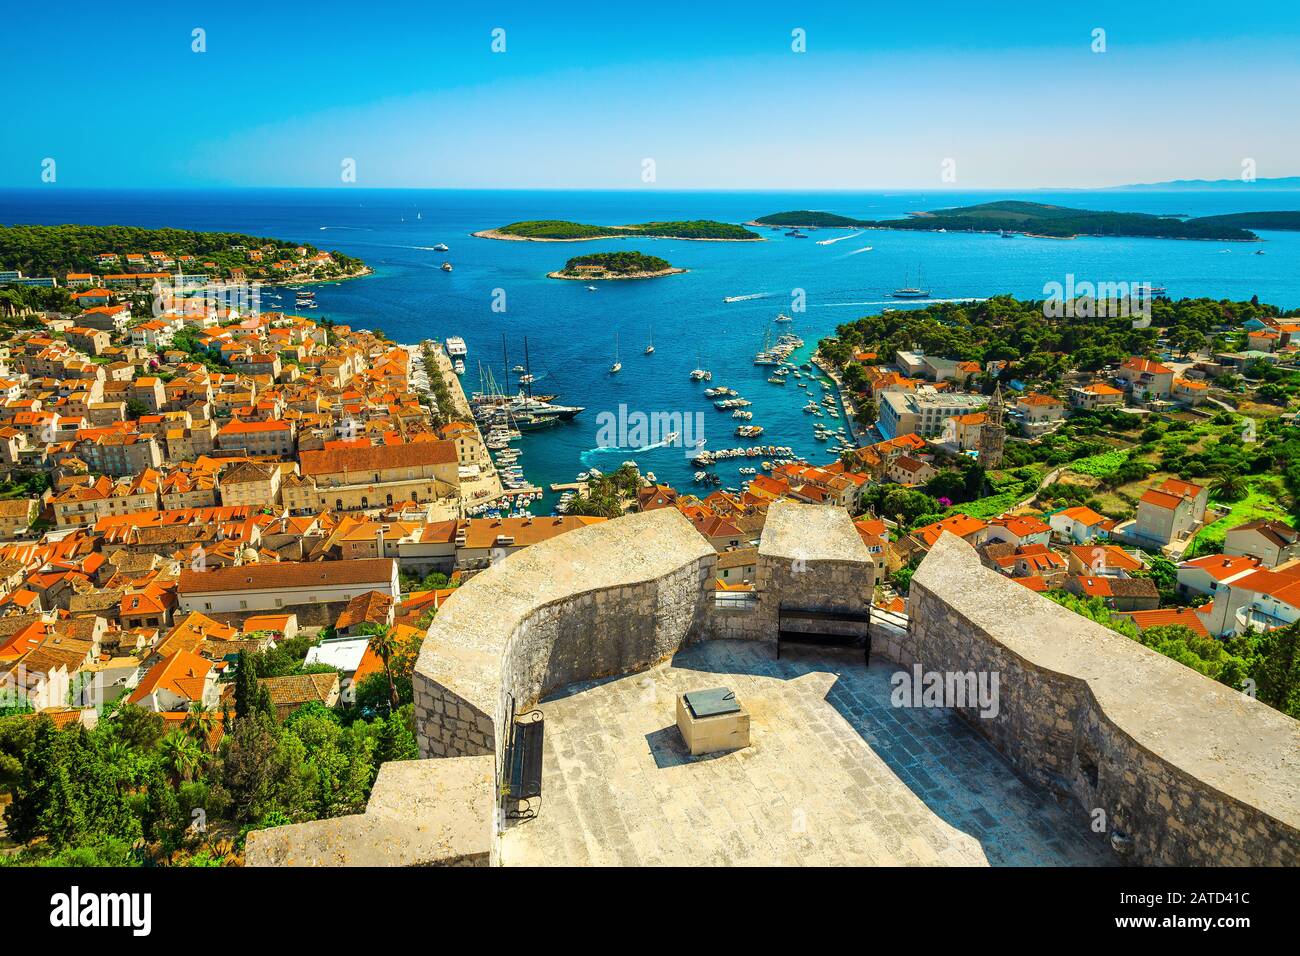 Vista admirable desde la fortaleza de Spanjola con el puerto de Hvar y las islas verdes en el fondo, la isla de Hvar, Dalmacia, Croacia, Europa Foto de stock